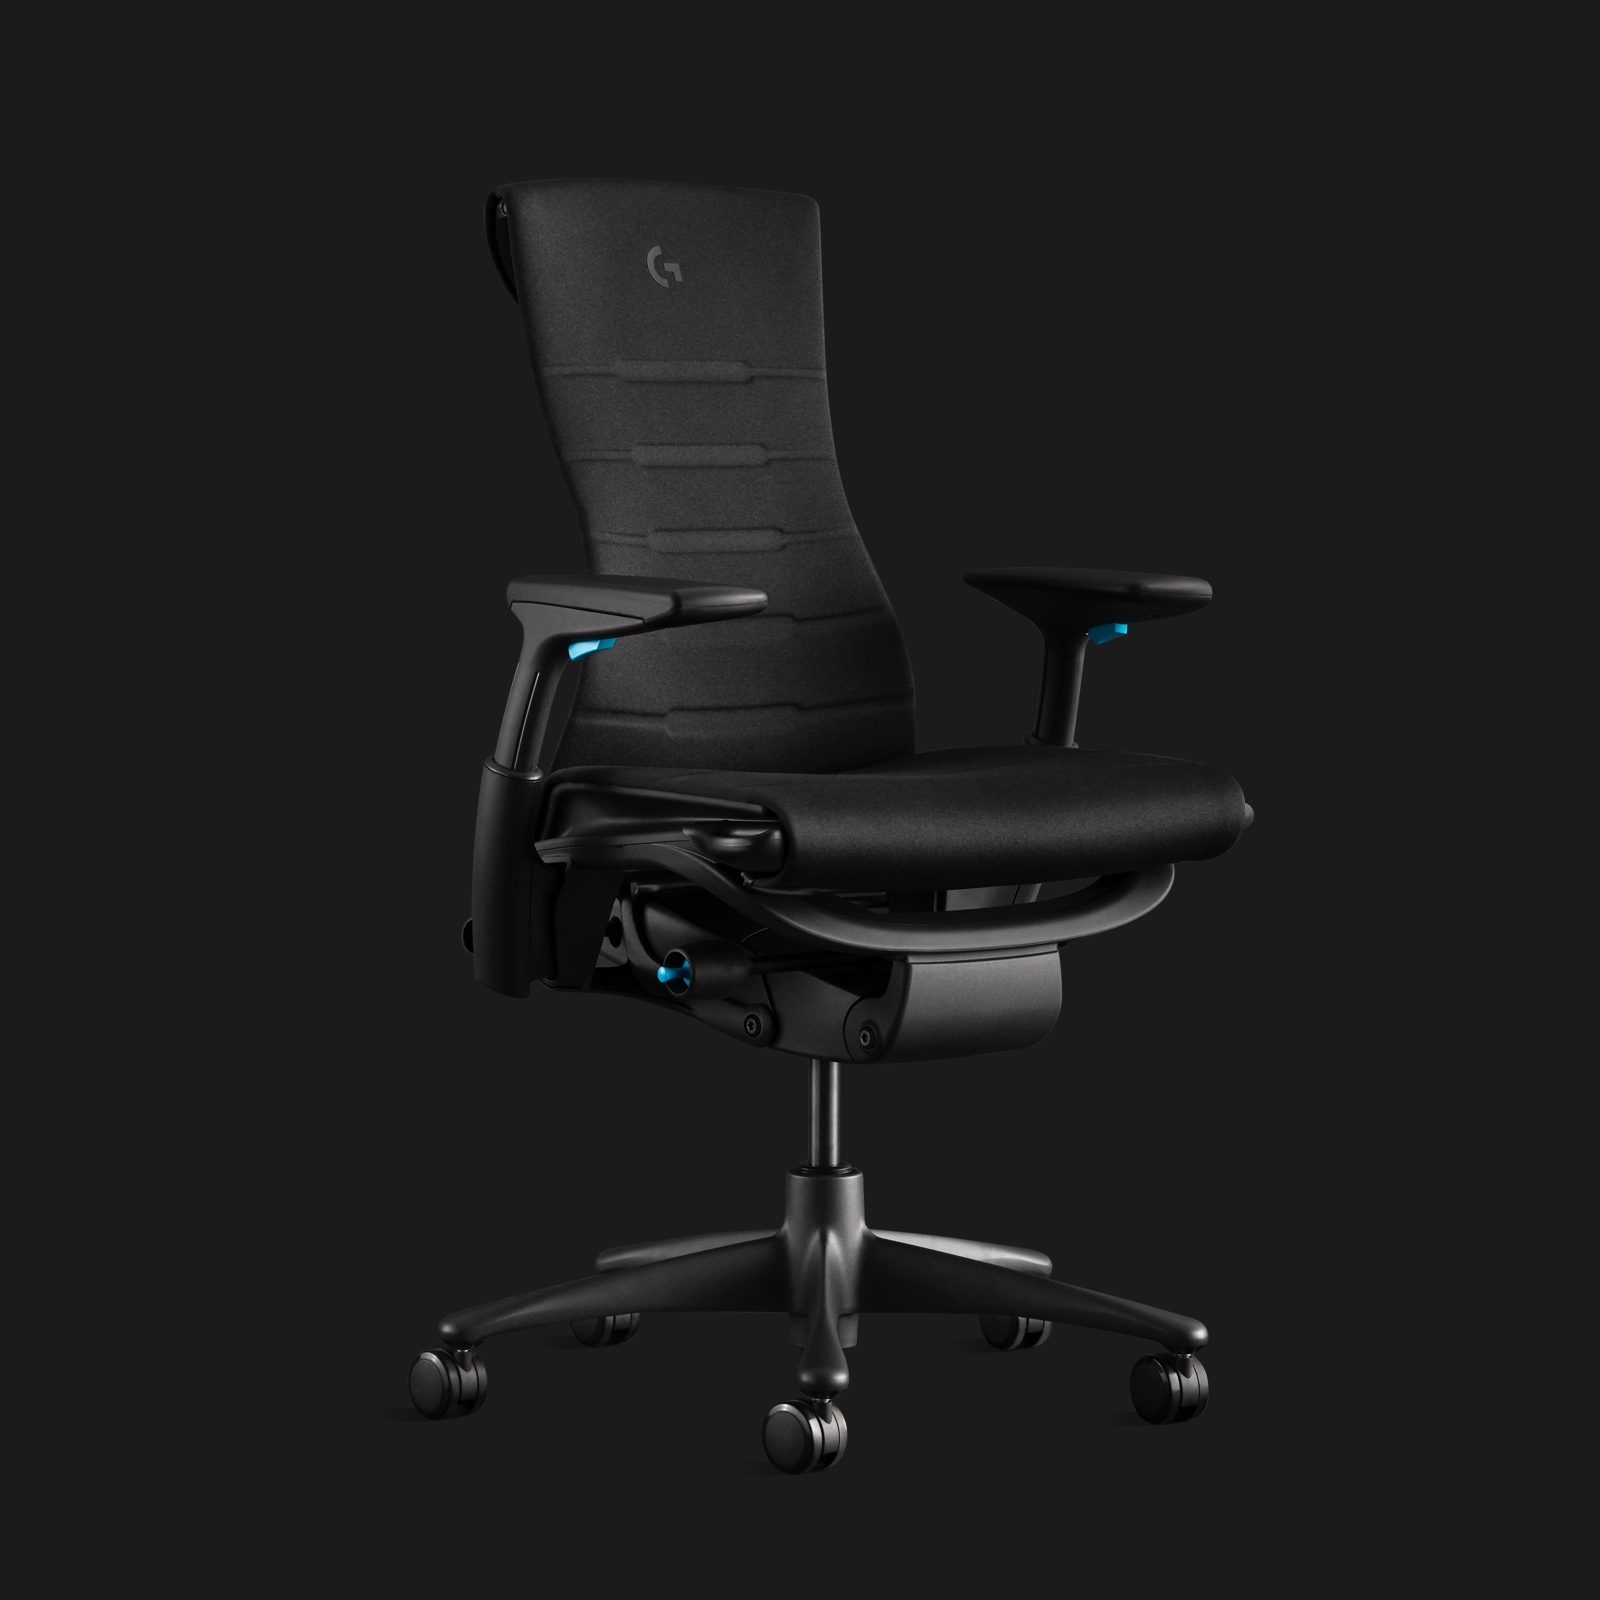 청록색 고정물과 양각식 Logitech G 로고가 검은색 배경에 각도를 이루고 보이는 다크 그레이 Embody Gaming Chair.